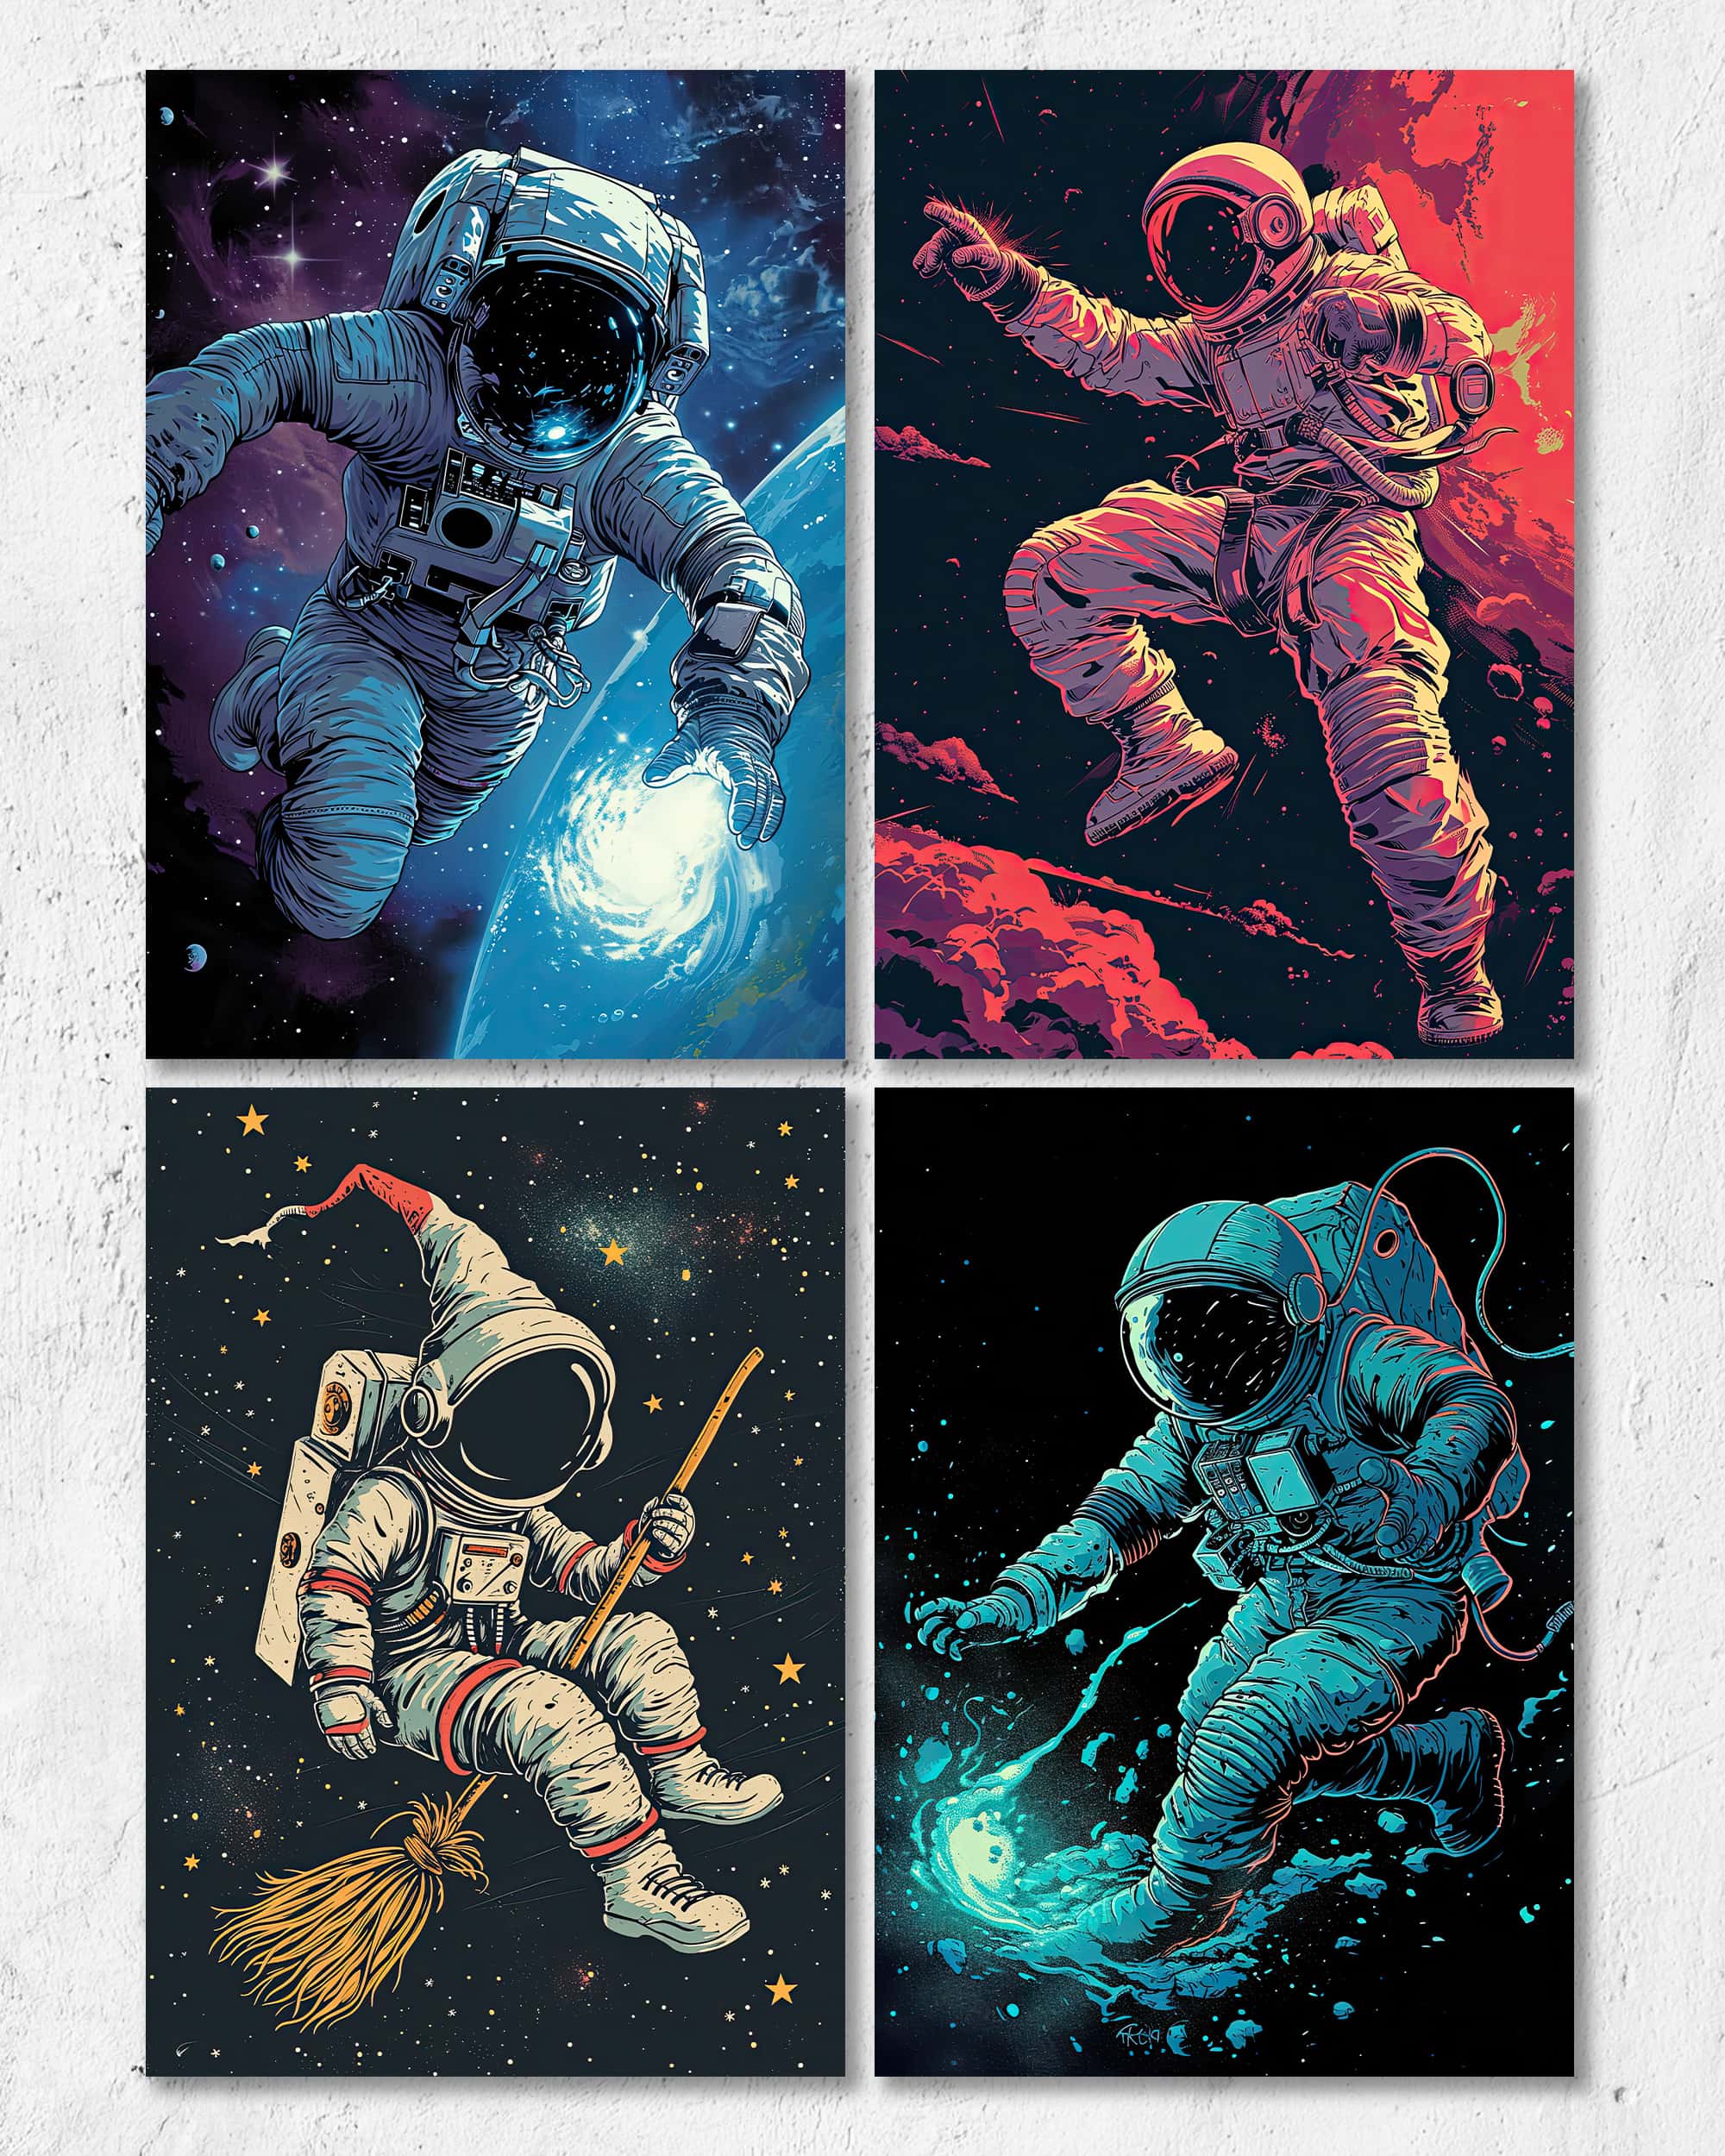 Lost in Space | Digital Poster Bundle